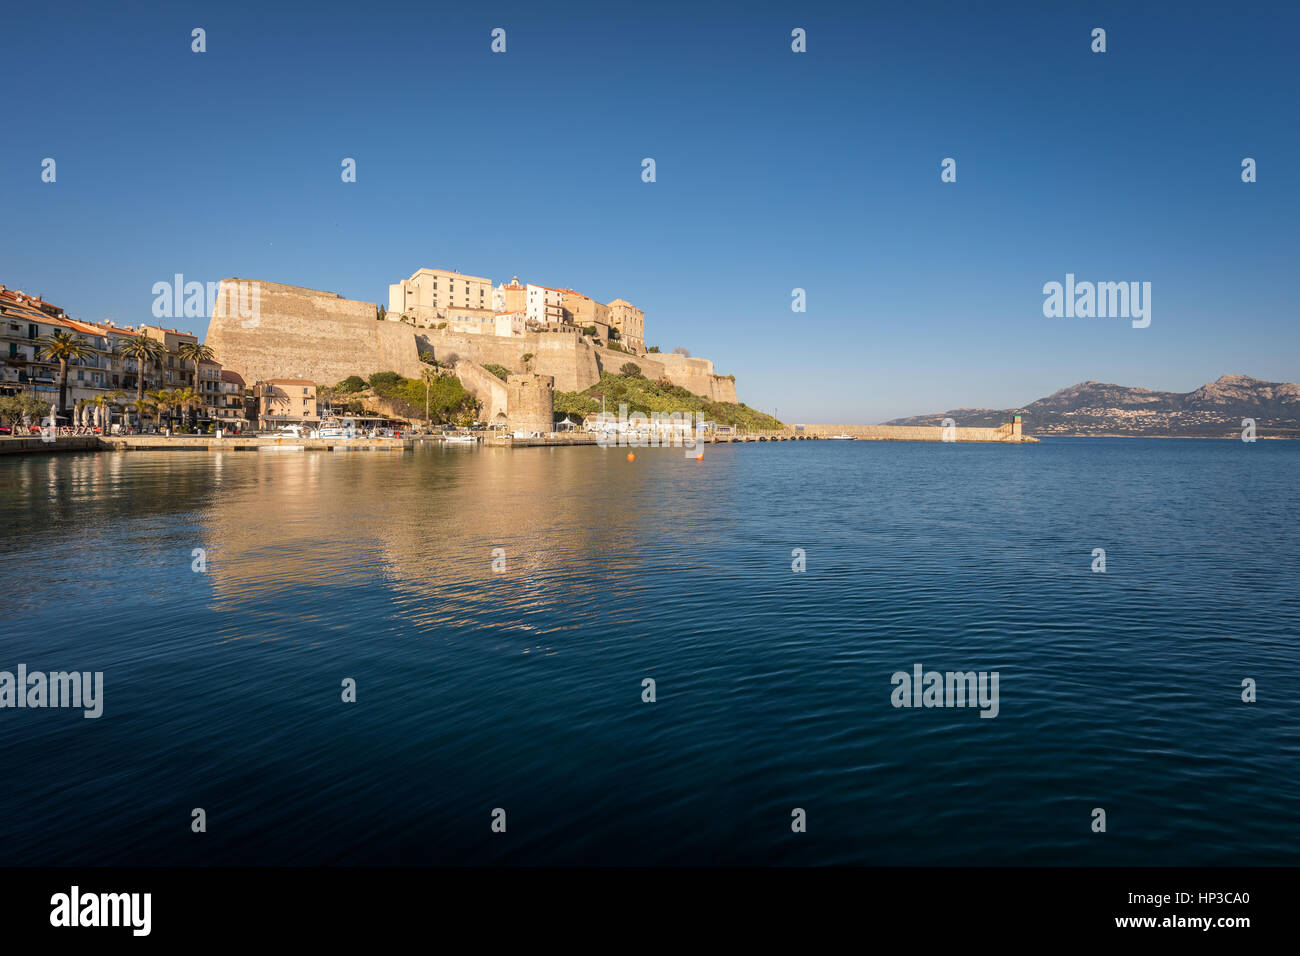 Zitadelle und Hafen Eingang in Calvi in Balagne Region Korsikas mit klaren, blauen Himmel und ruhigem Wasser Stockfoto